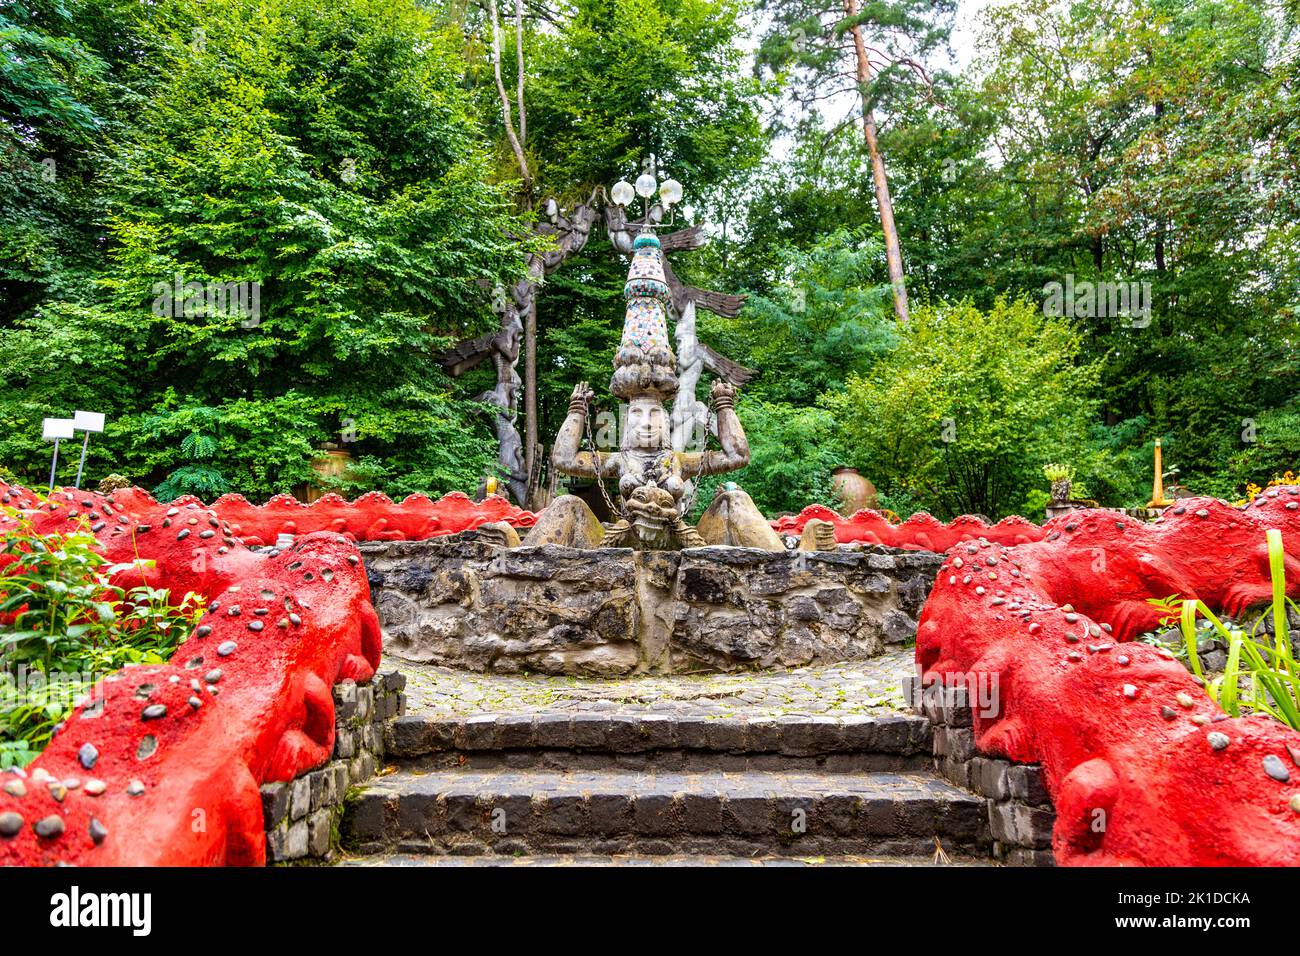 Déesse indienne des puits d'eau dans le jardin du parc Bruno Weber, Dietikon, Suisse Banque D'Images